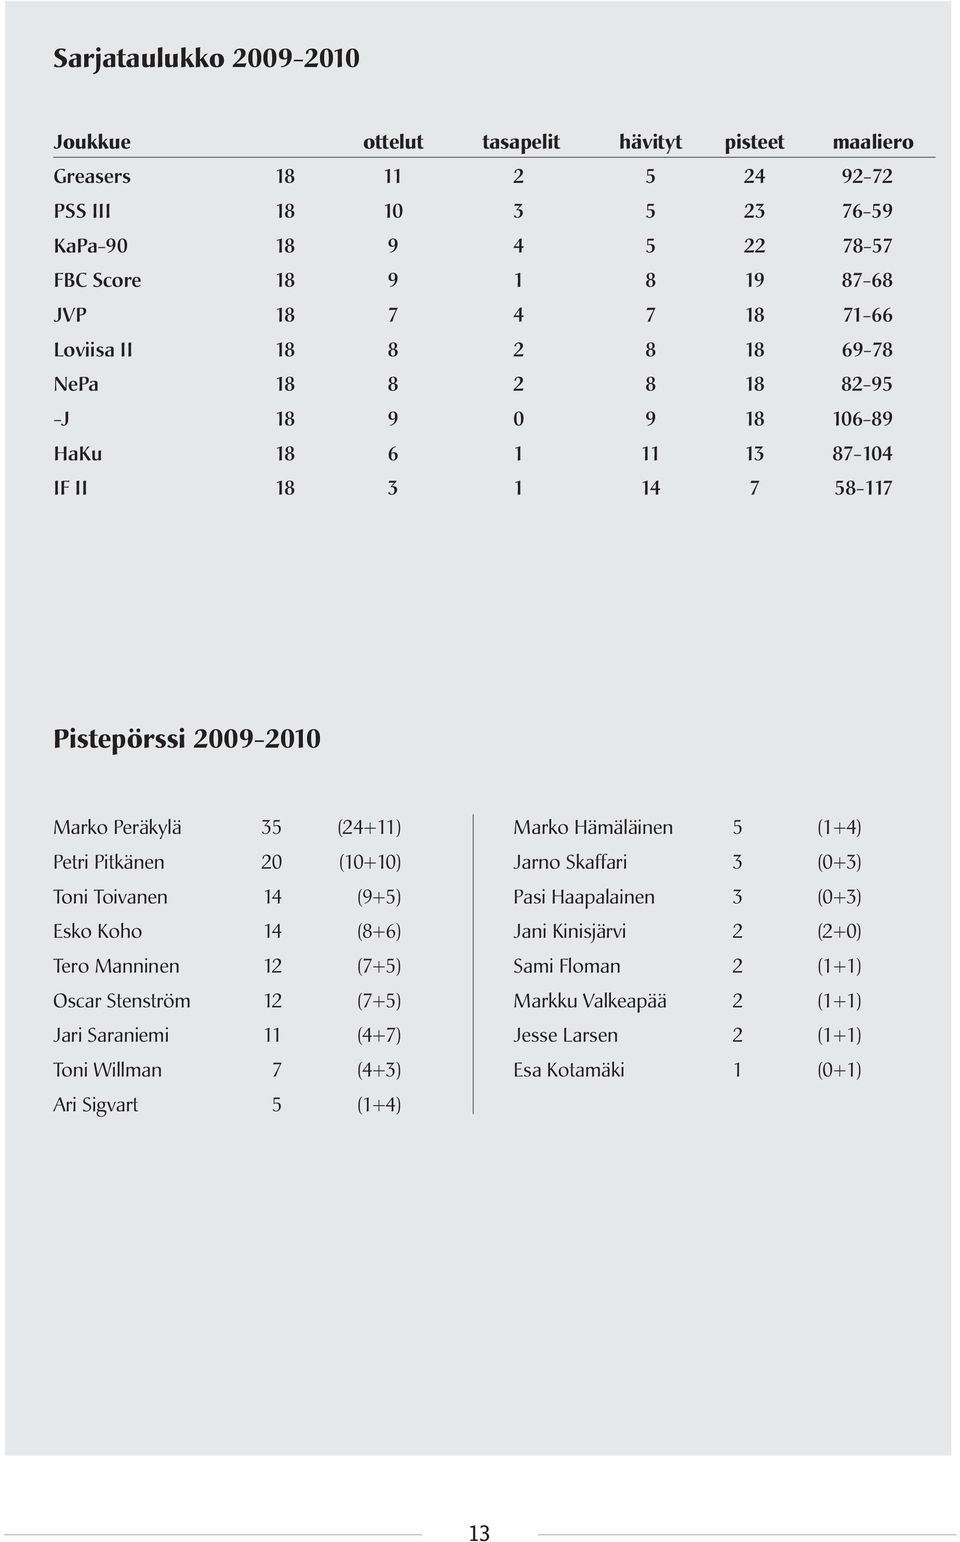 (24+11) Petri Pitkänen 20 (10+10) Toni Toivanen 14 (9+5) Esko Koho 14 (8+6) Tero Manninen 12 (7+5) Oscar Stenström 12 (7+5) Jari Saraniemi 11 (4+7) Toni Willman 7 (4+3) Ari Sigvart 5